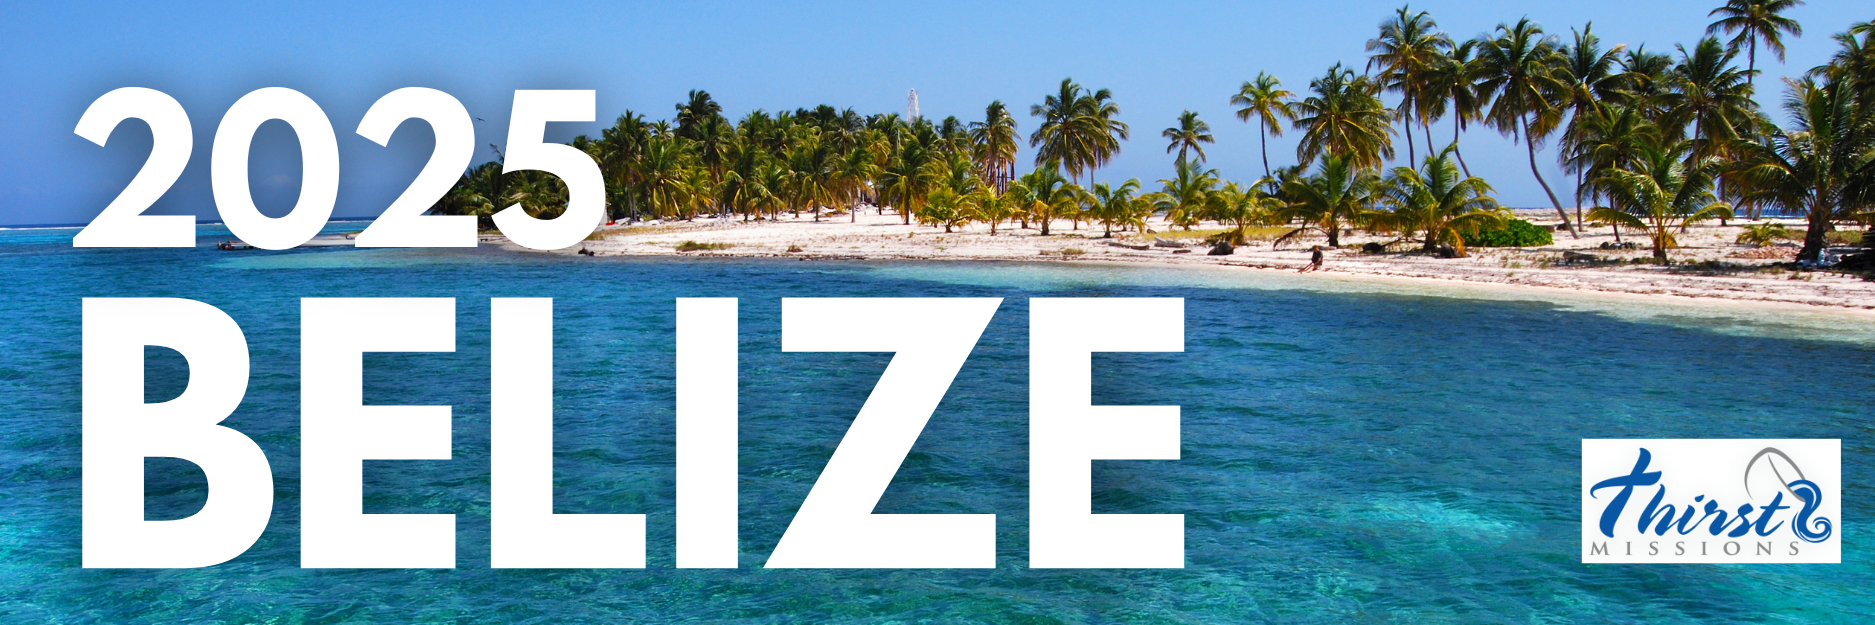 Belize 2025